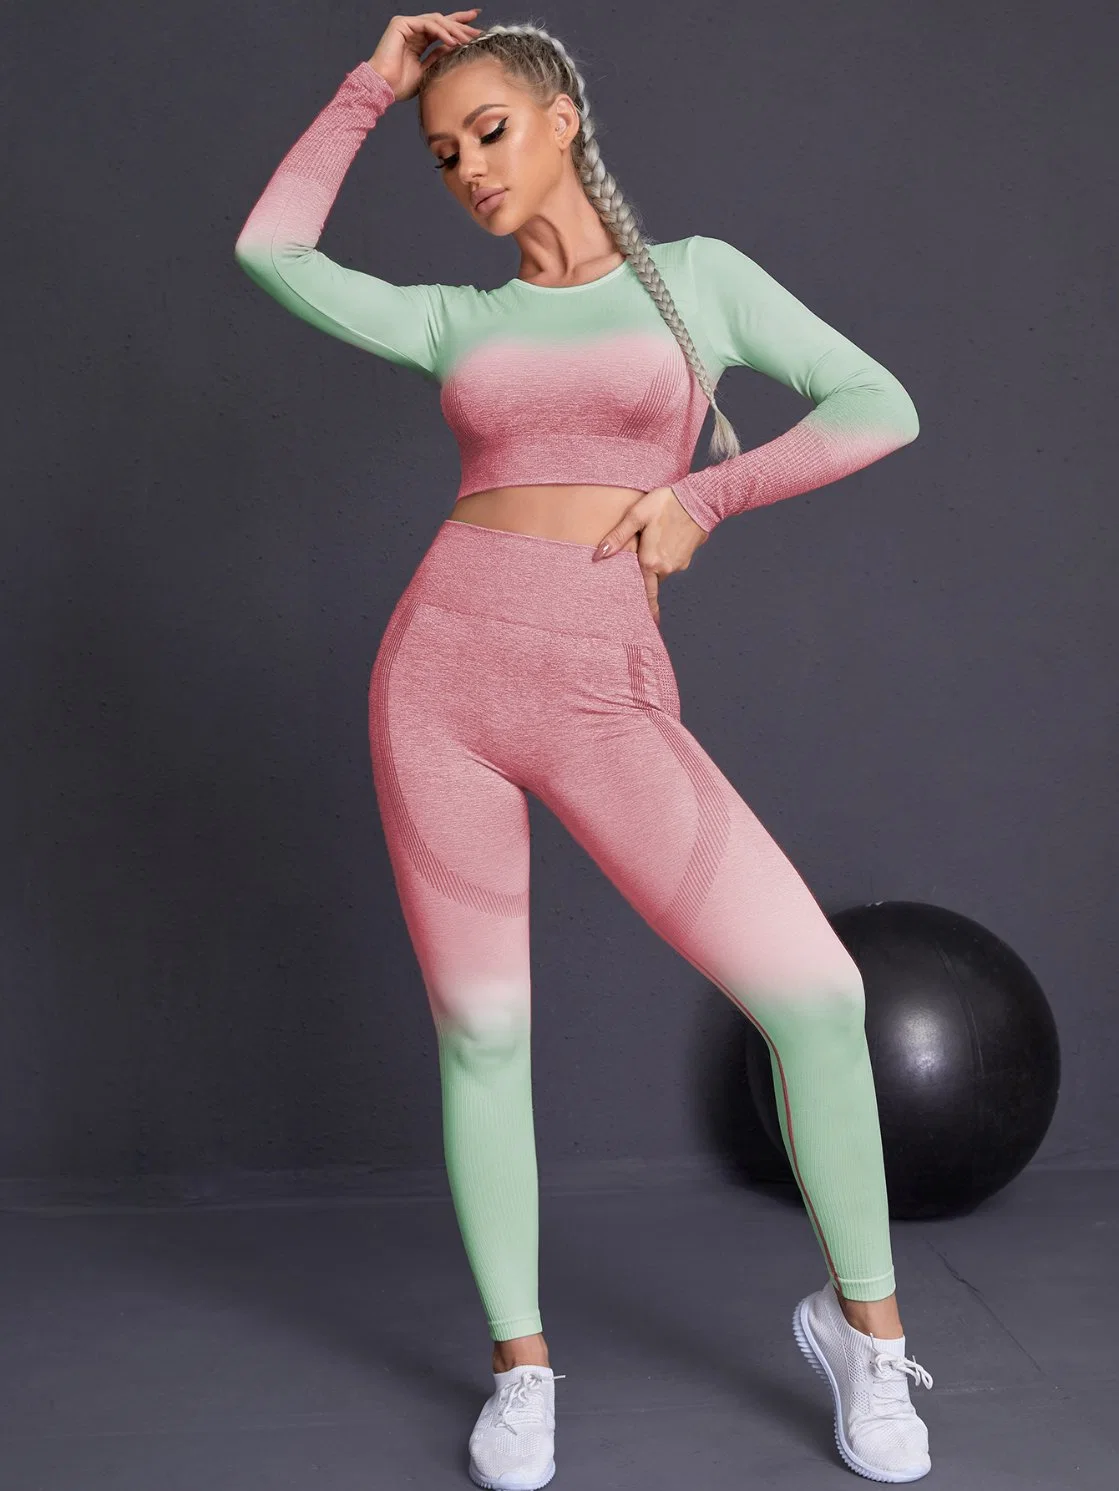 Frauen Langarm Crop Top + Workout Kleidung Fitness-Bh Outfit Active Wear Sportanzüge Sport Leggings Mit Hohem Bund Nahtlos Yoga-Set